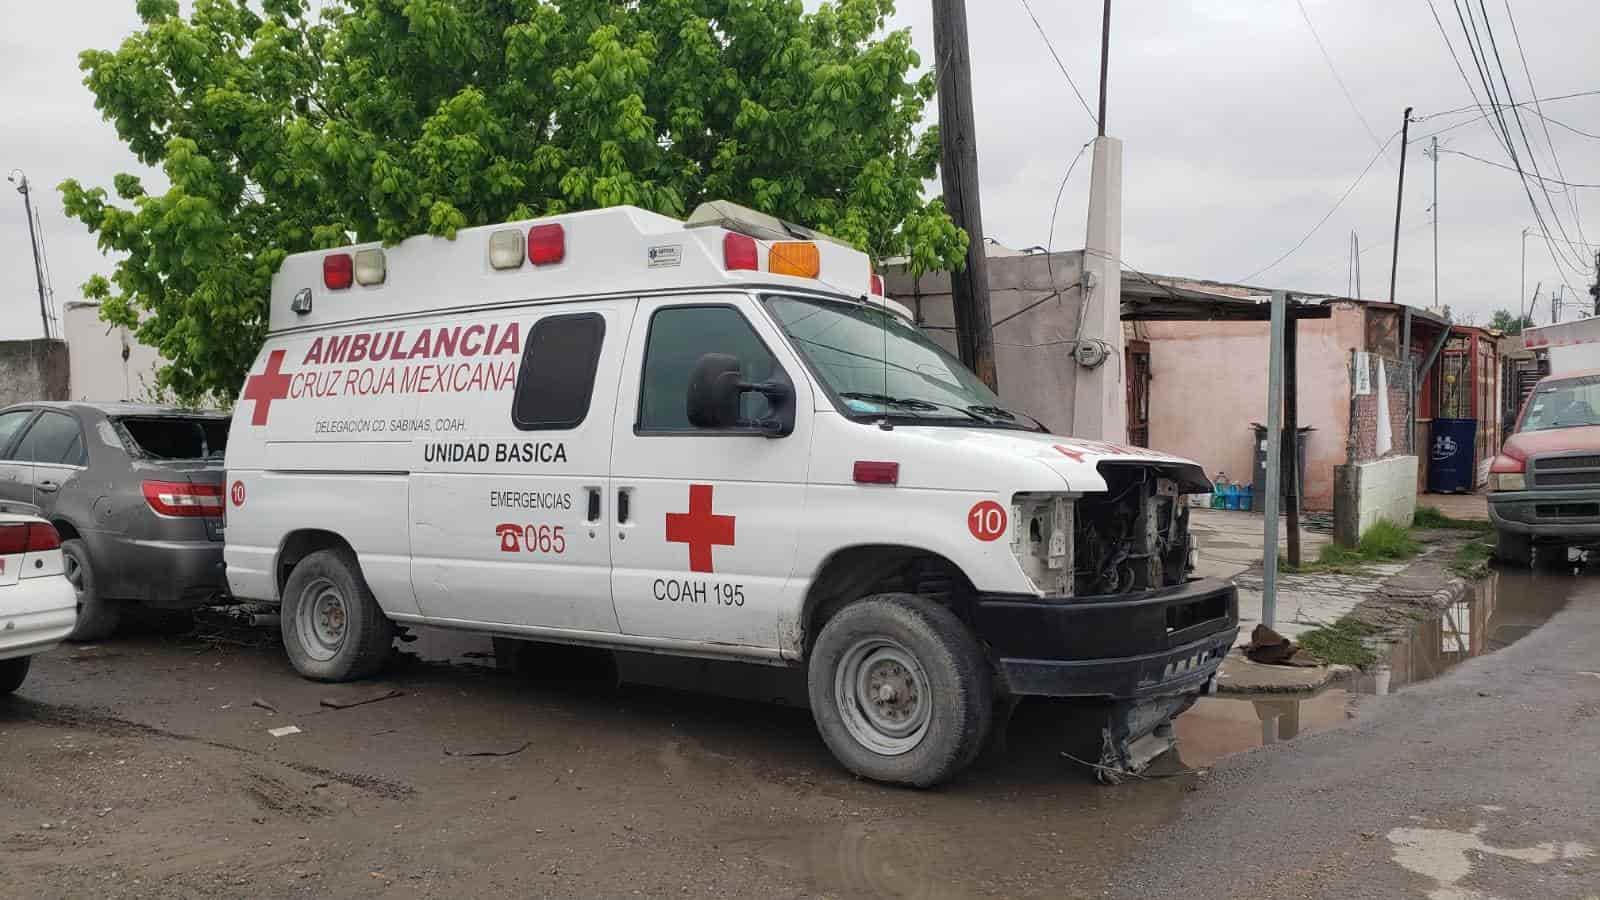 Unidades de Cruz Roja Descompuestas